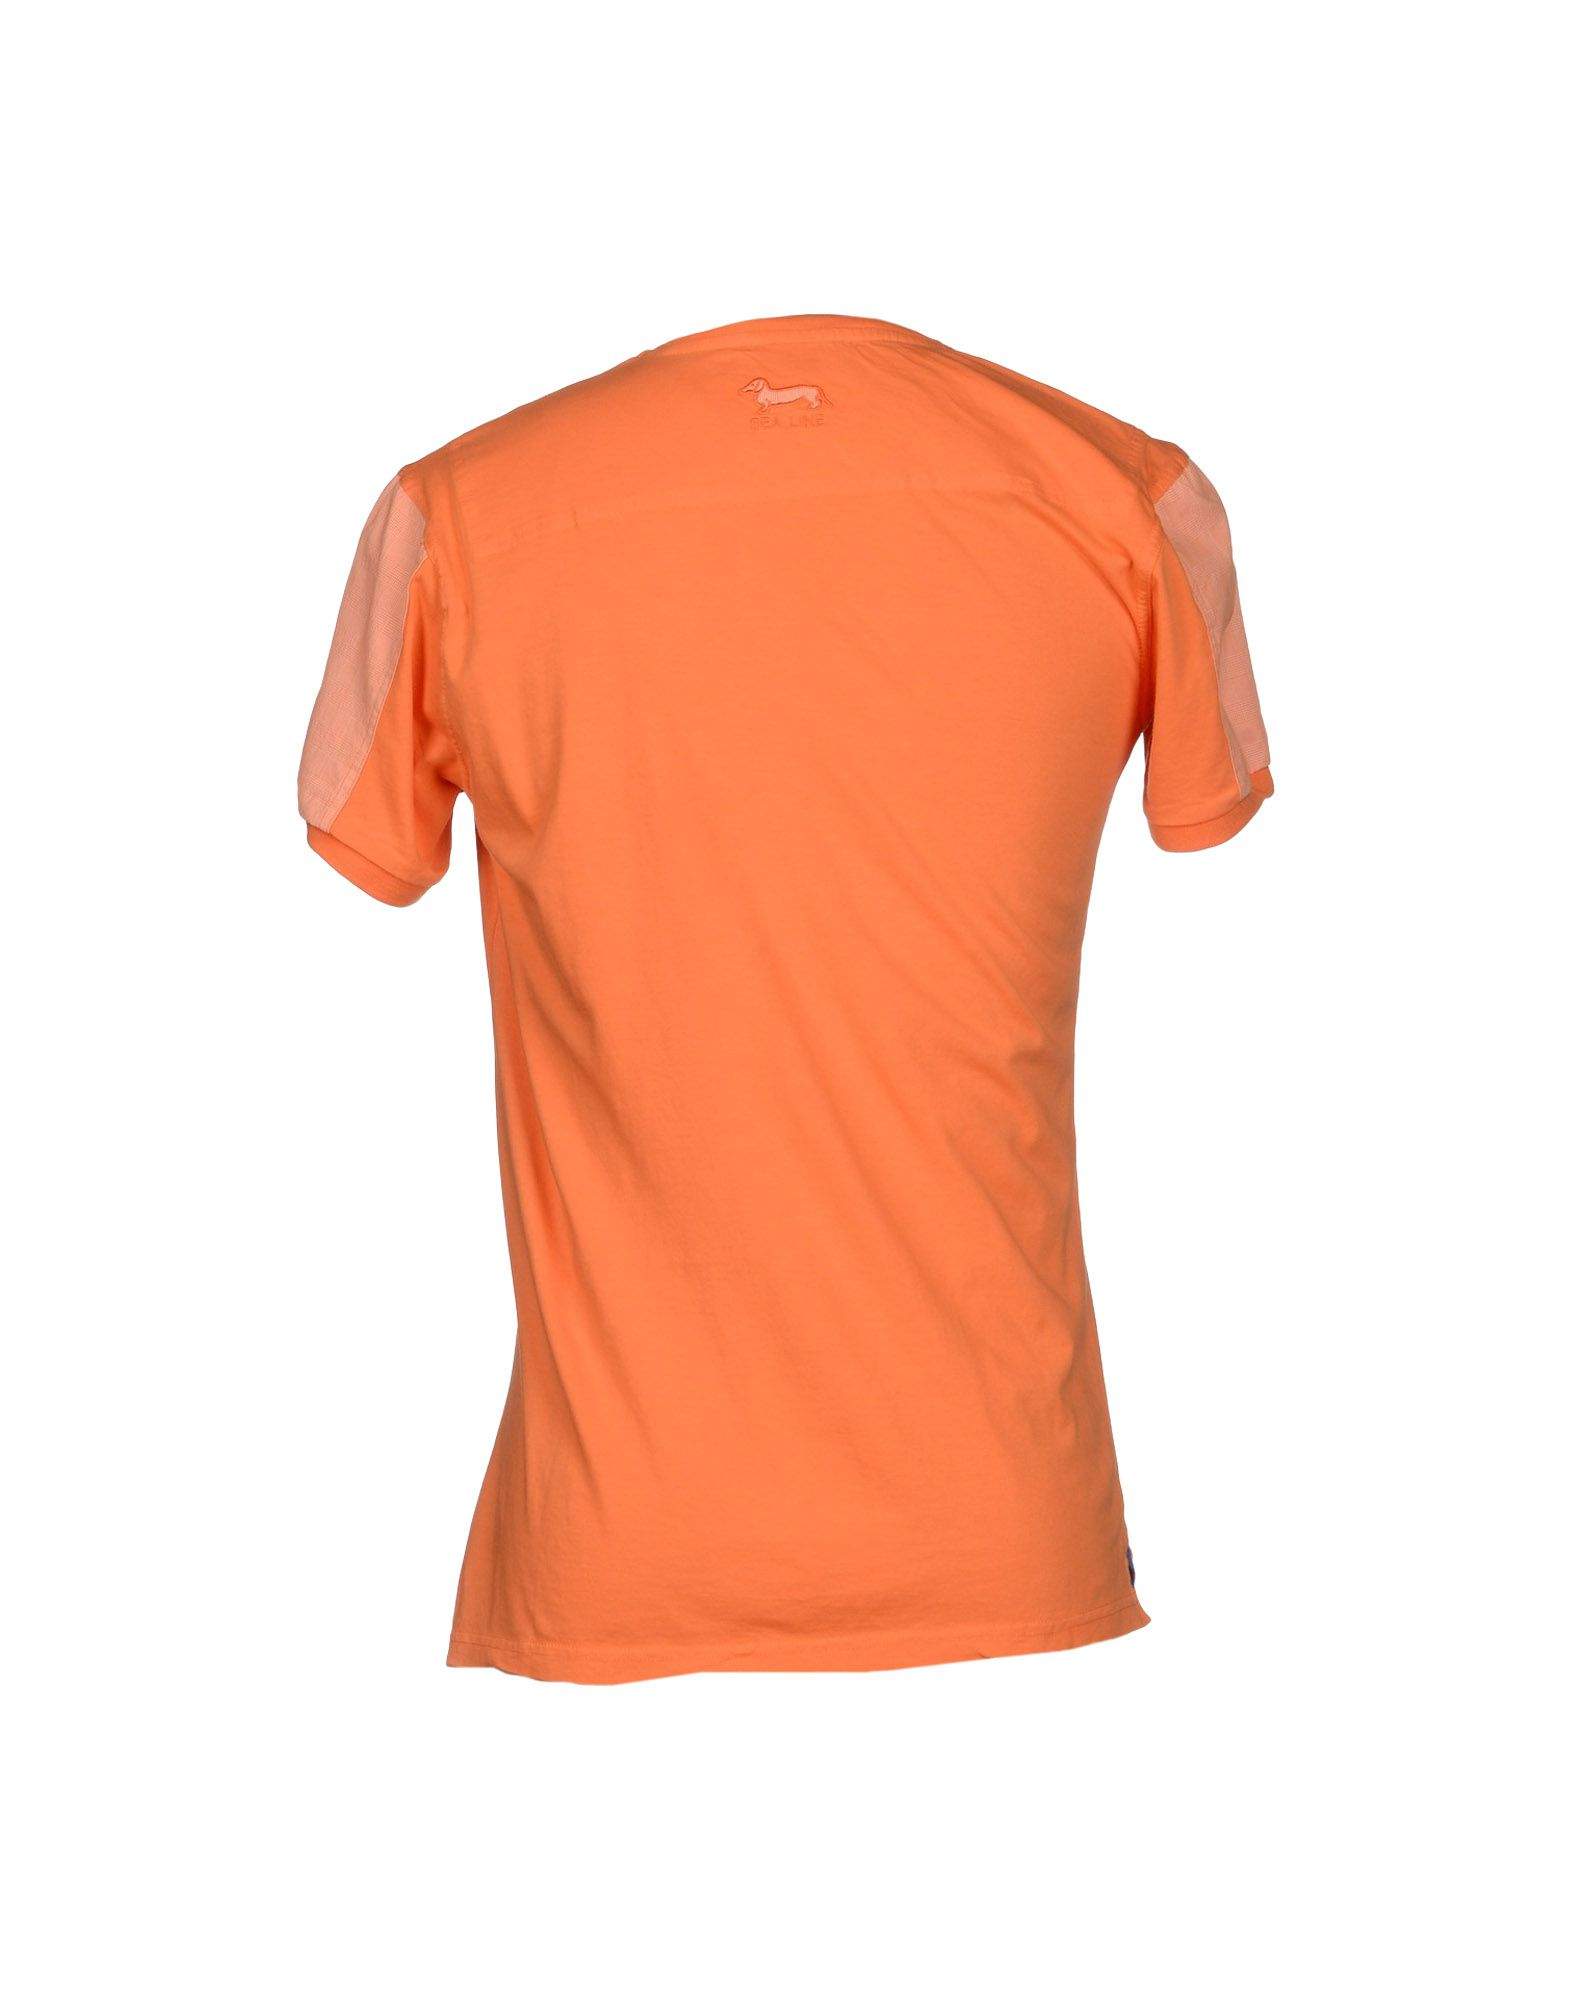 Harmont & Blaine T-shirt in Orange for Men - Lyst